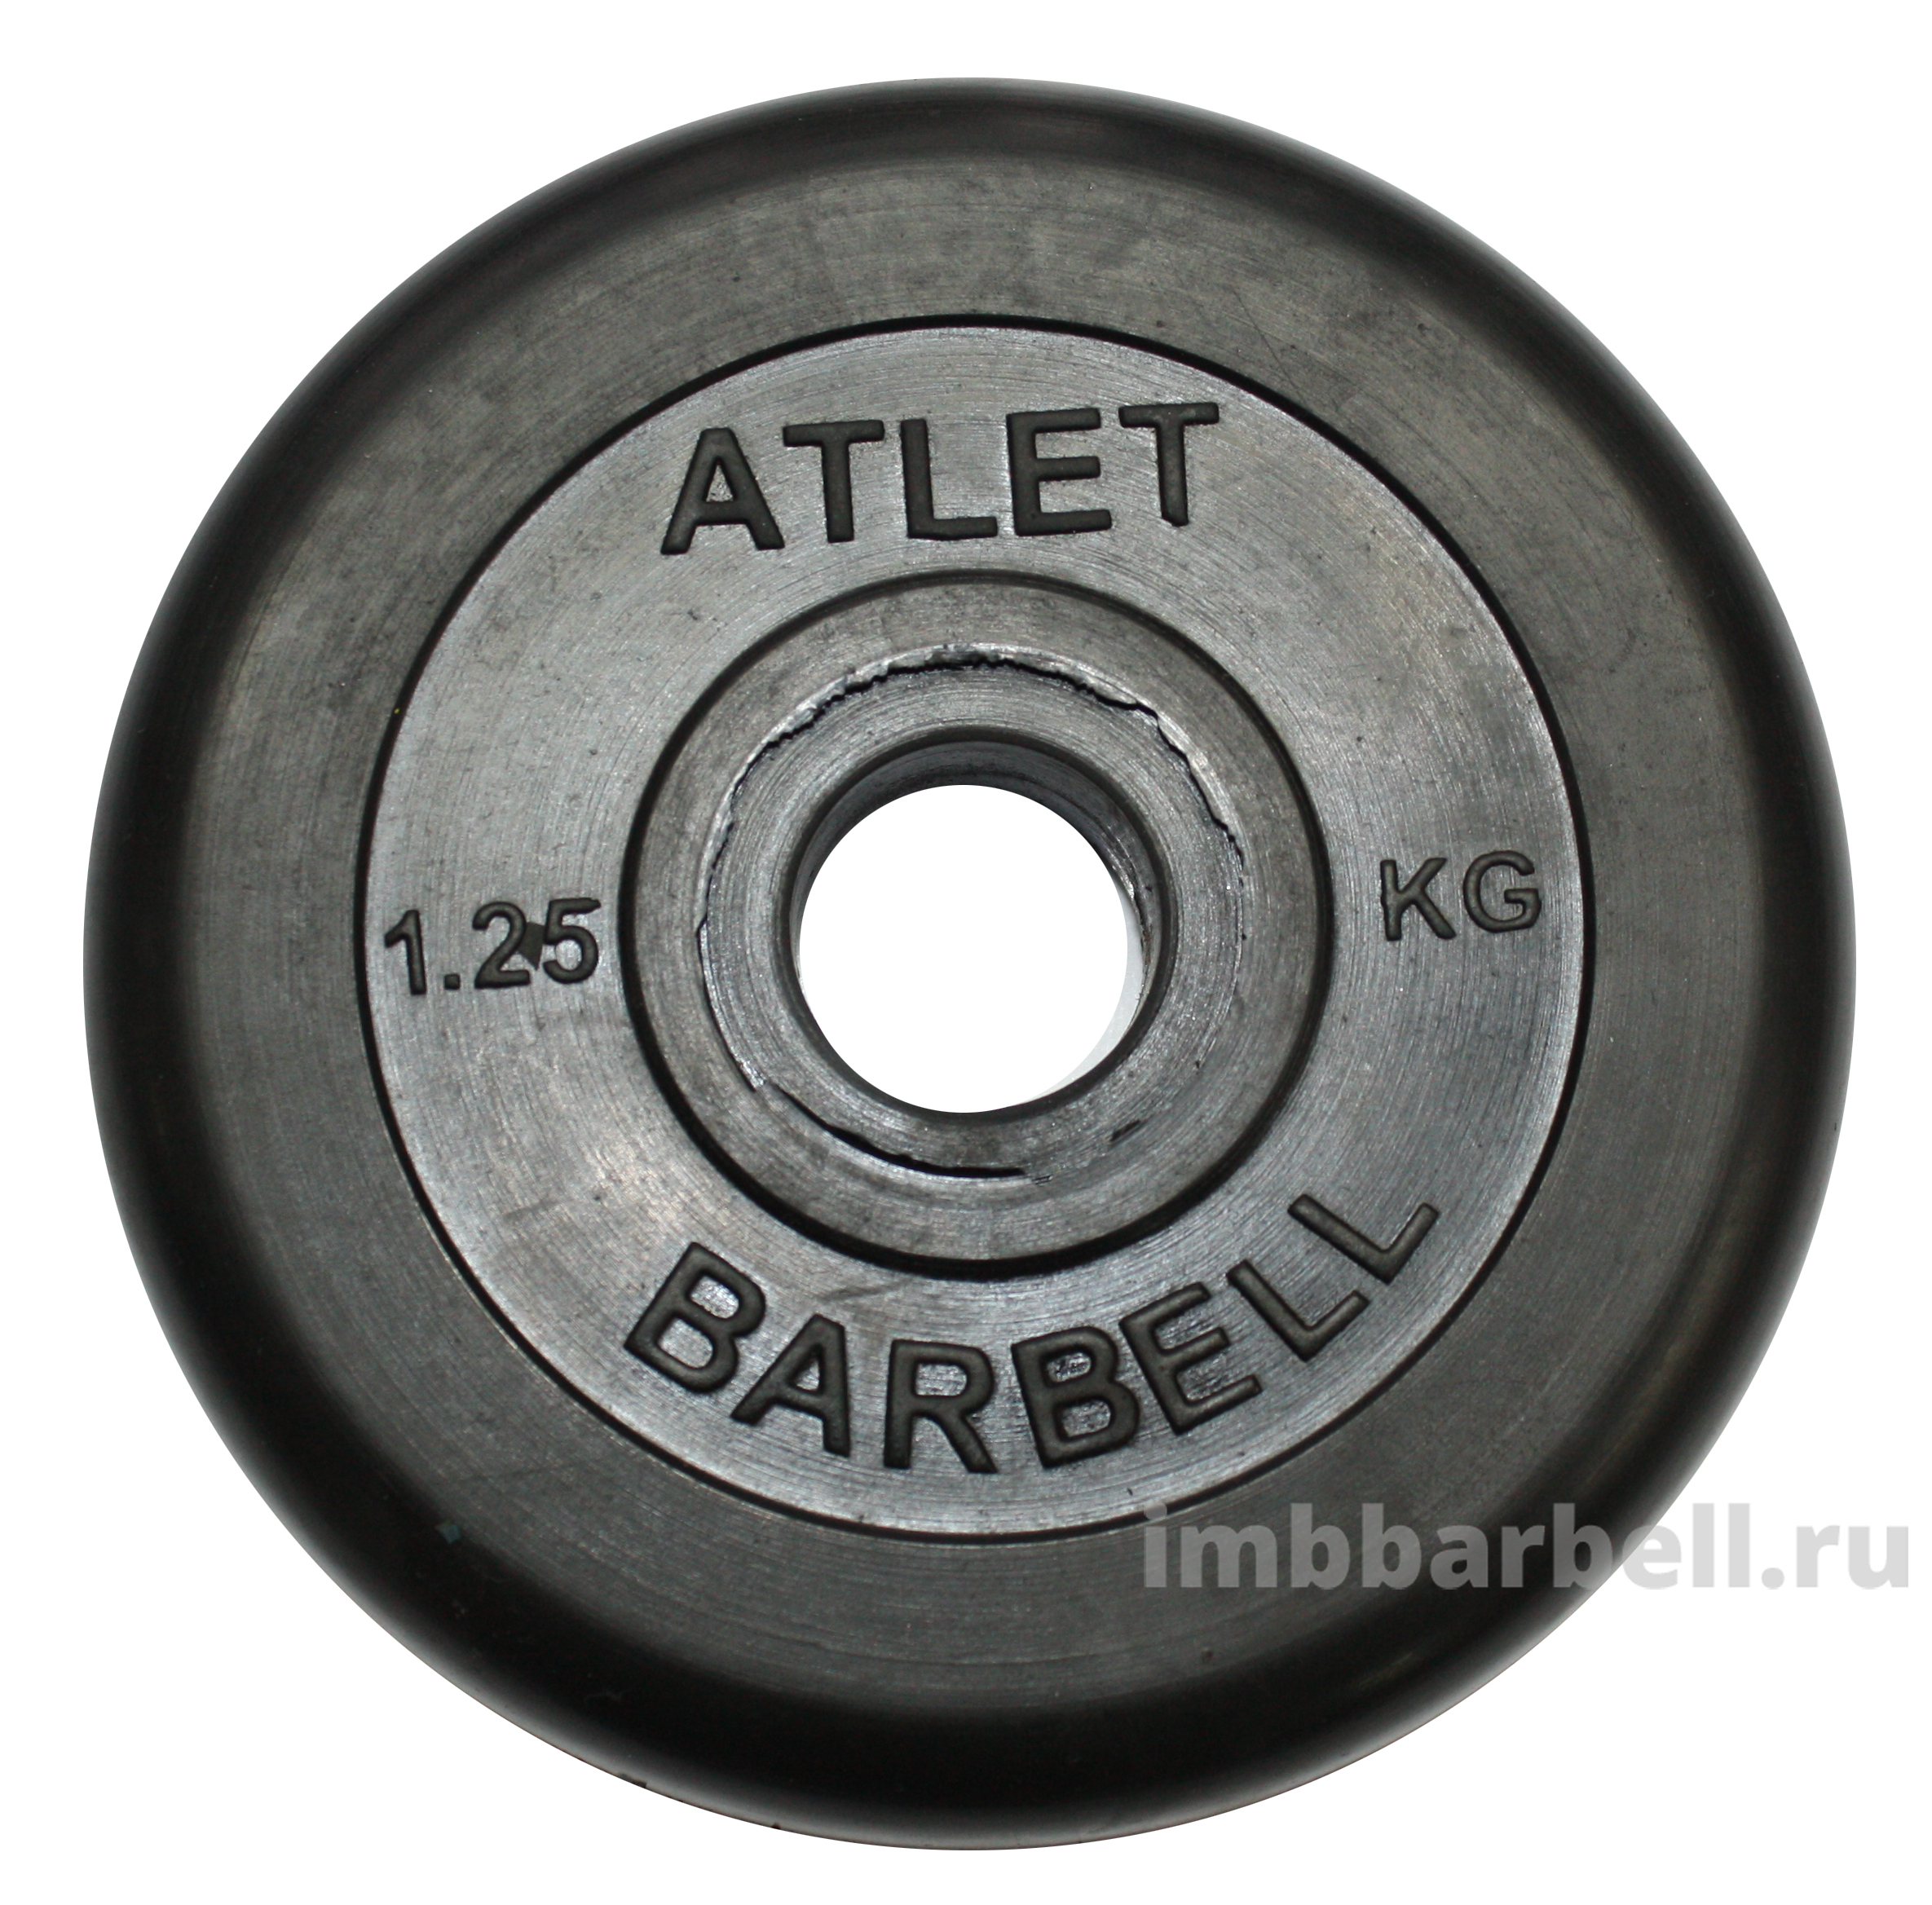 Диск обрезиненный Atlet, 26 мм, 1,25 кг. 